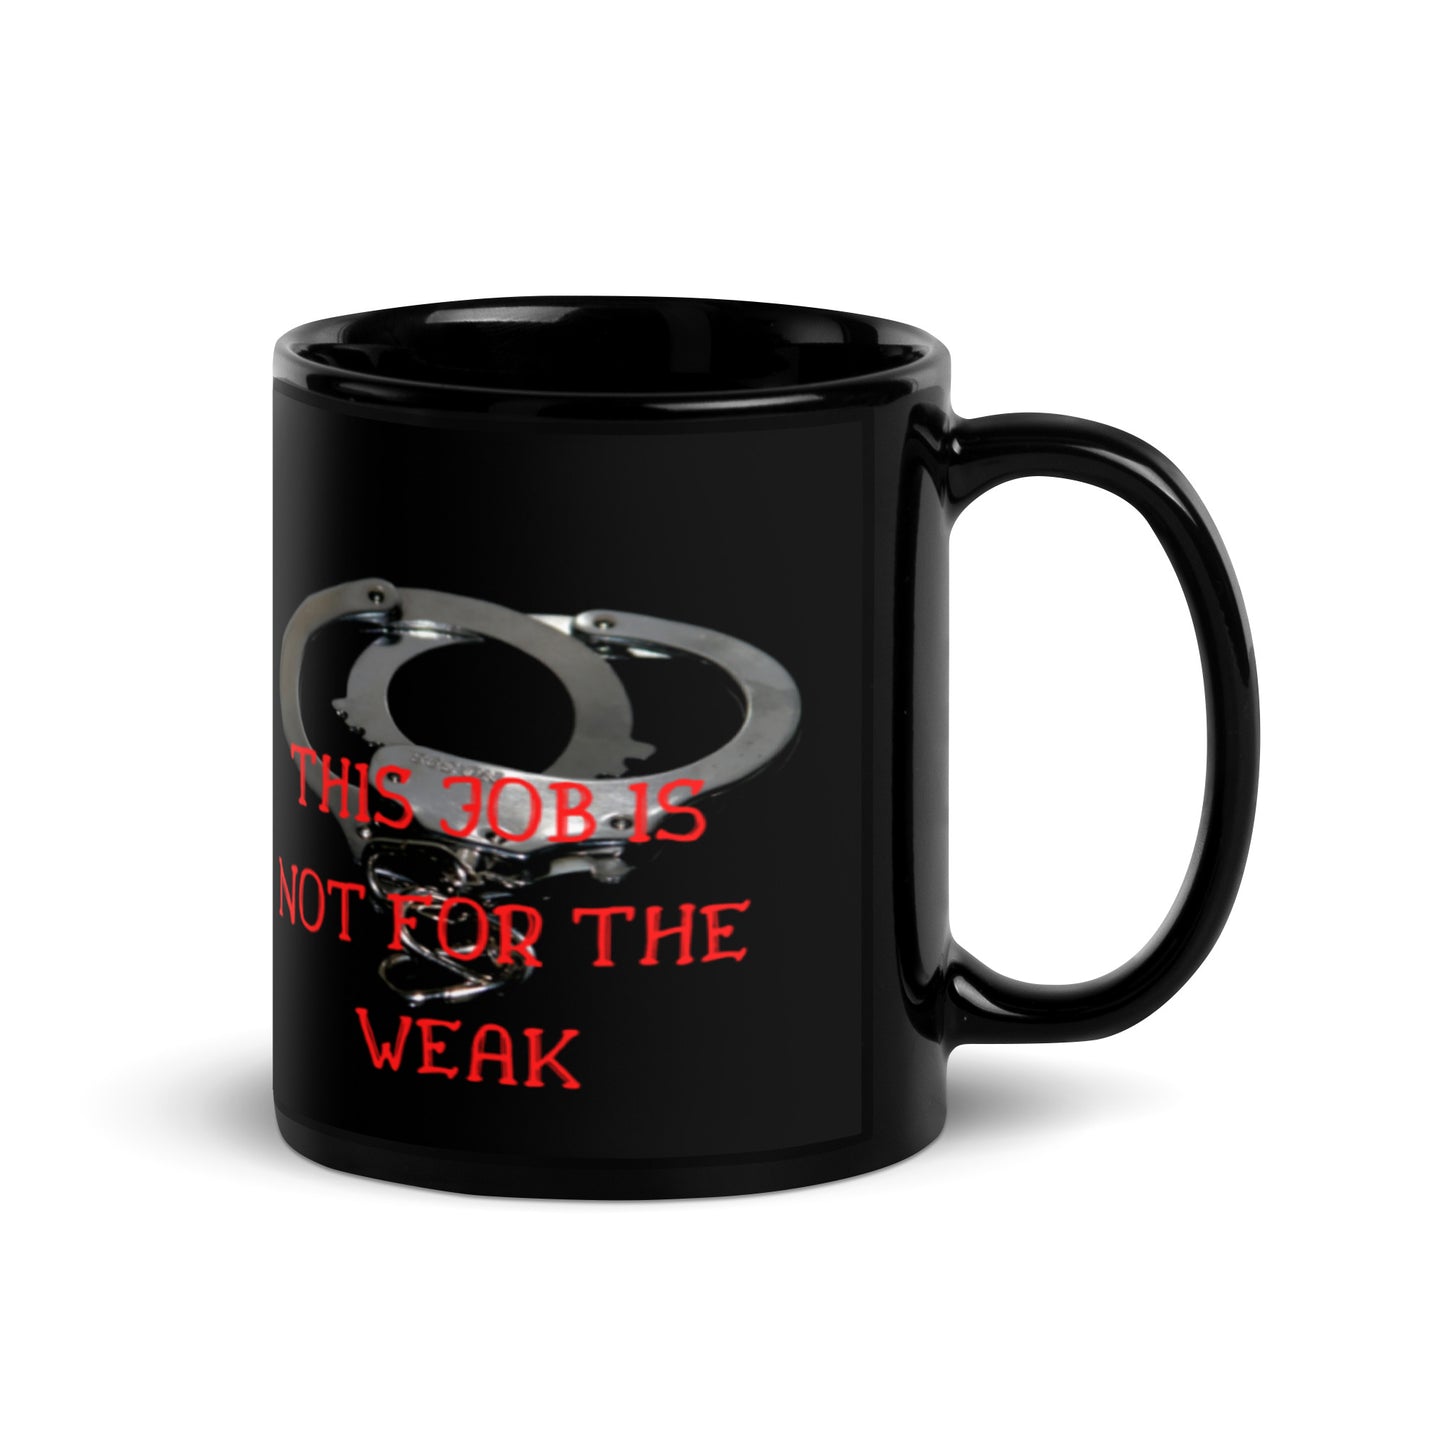 Not for the weak Mug